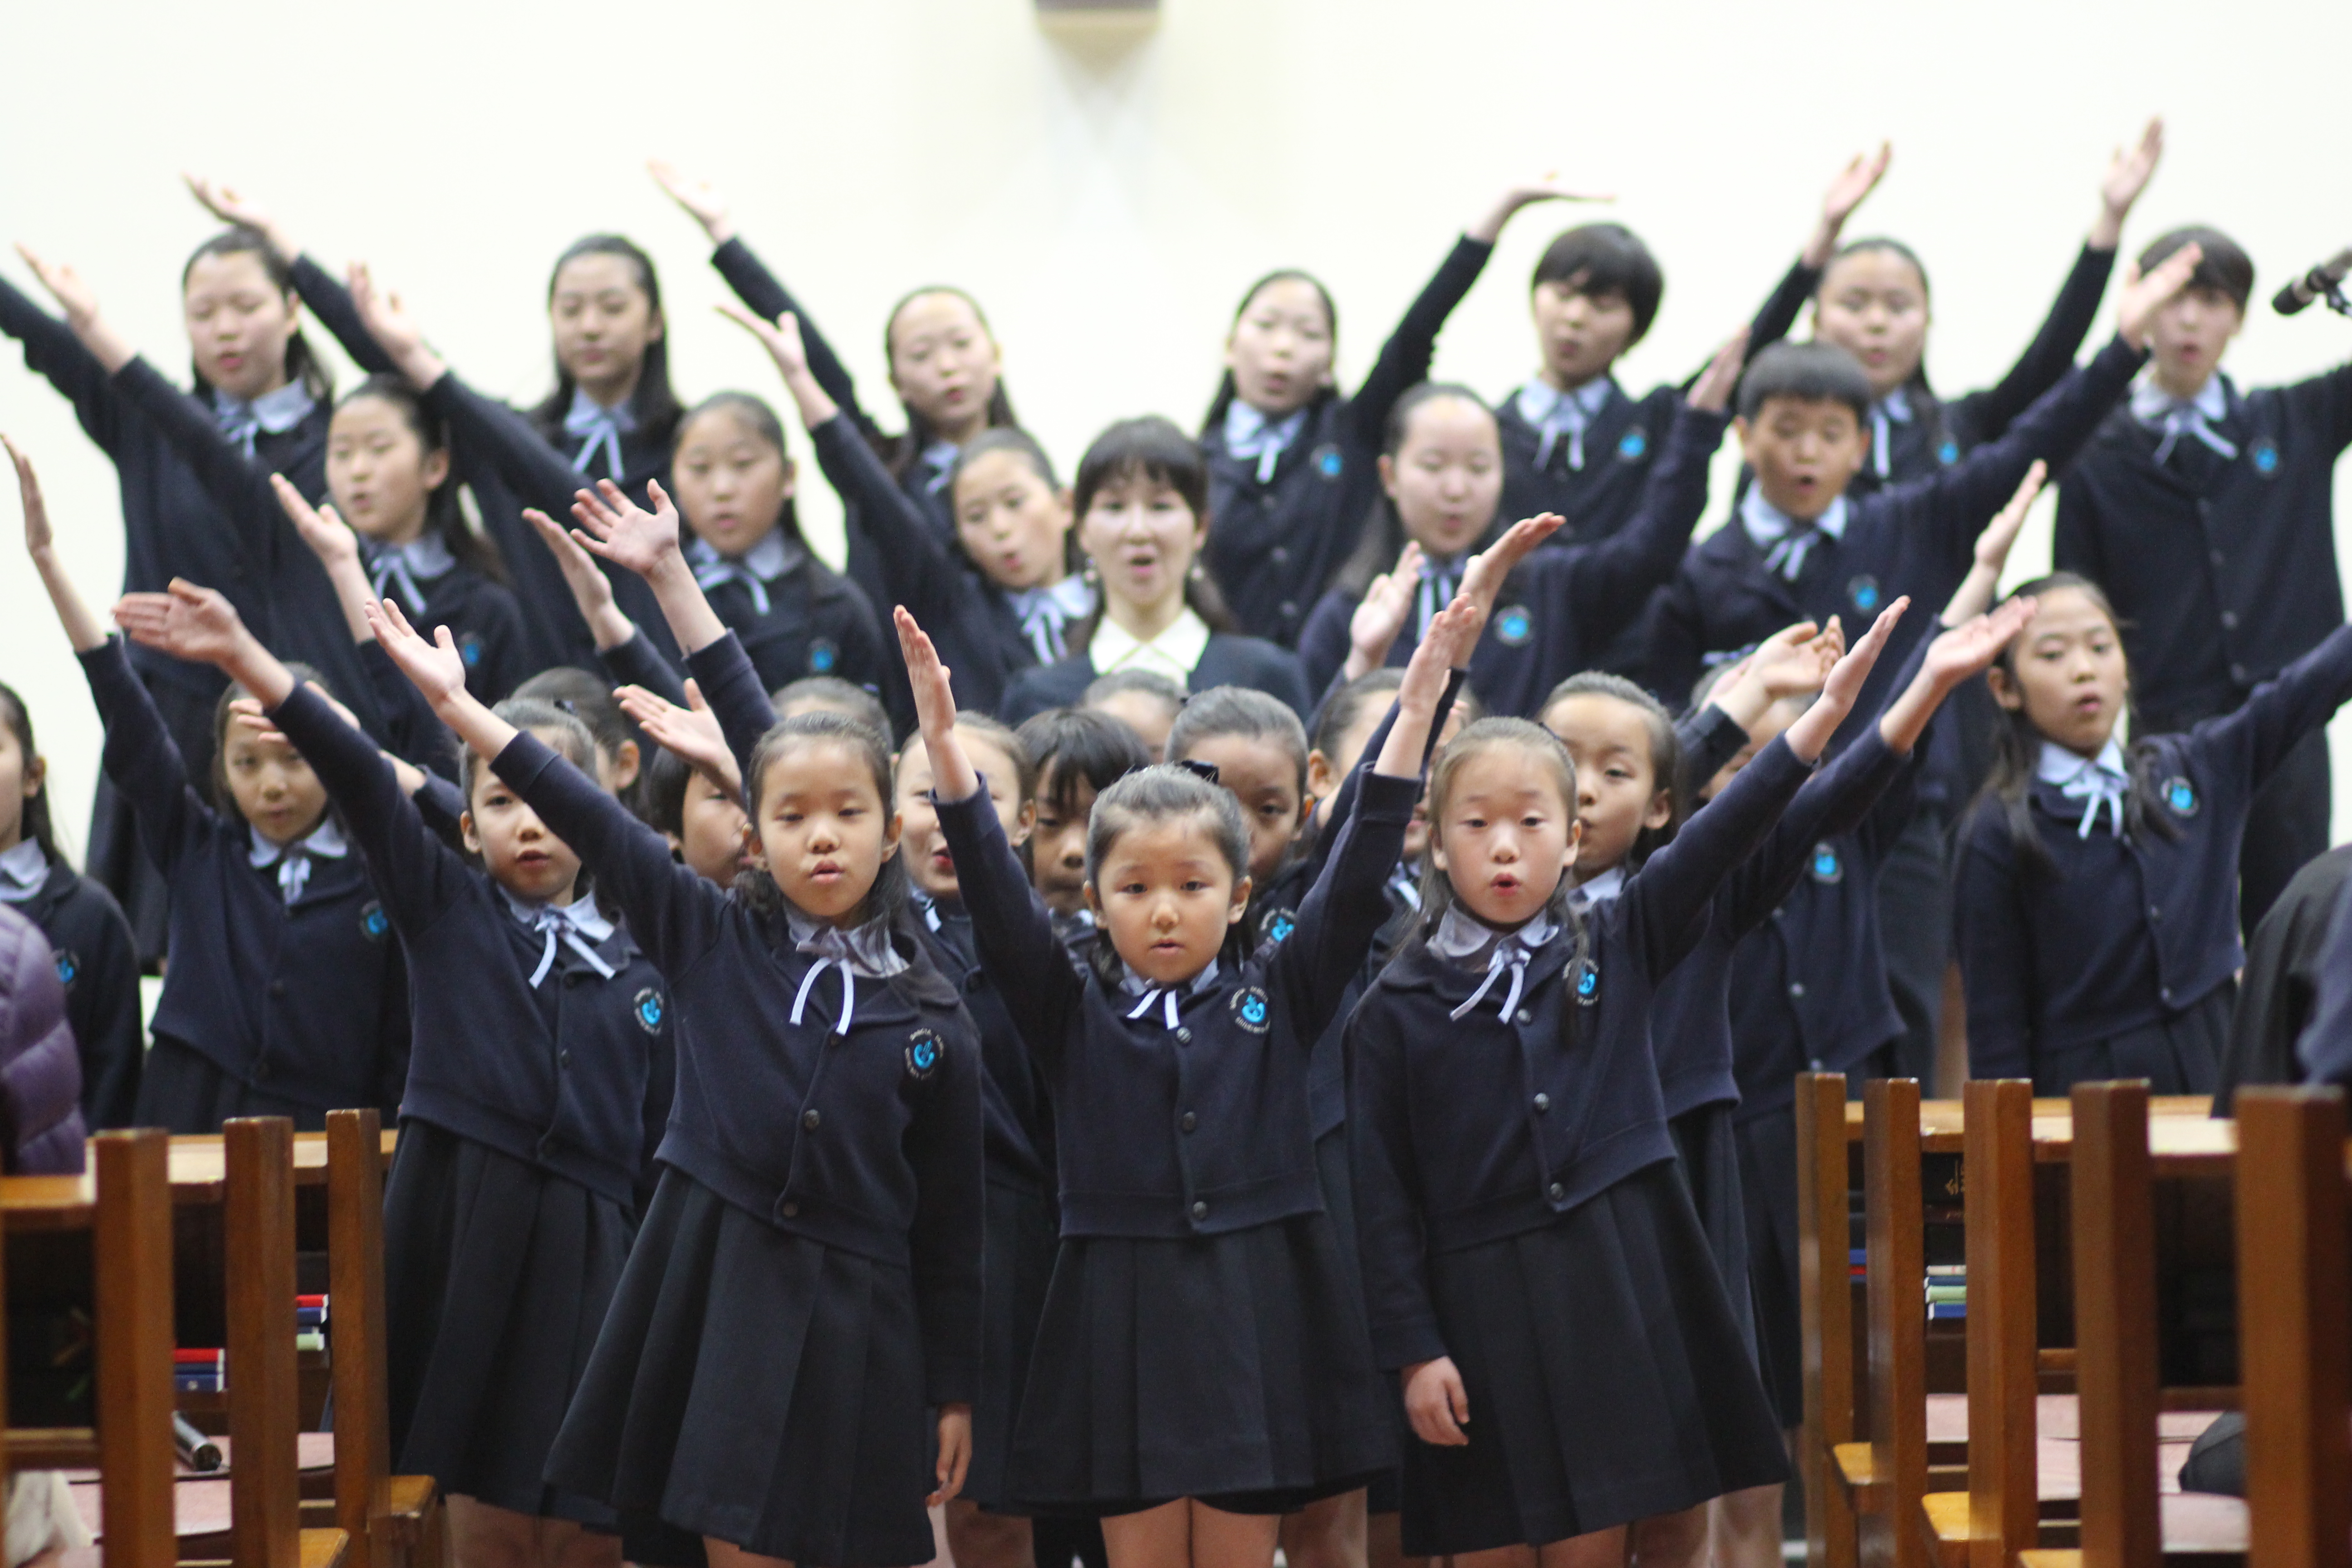 가을음악회- 우면동성당 어린이합창단(2013.11.8)의 관련된 이미지 입니다.